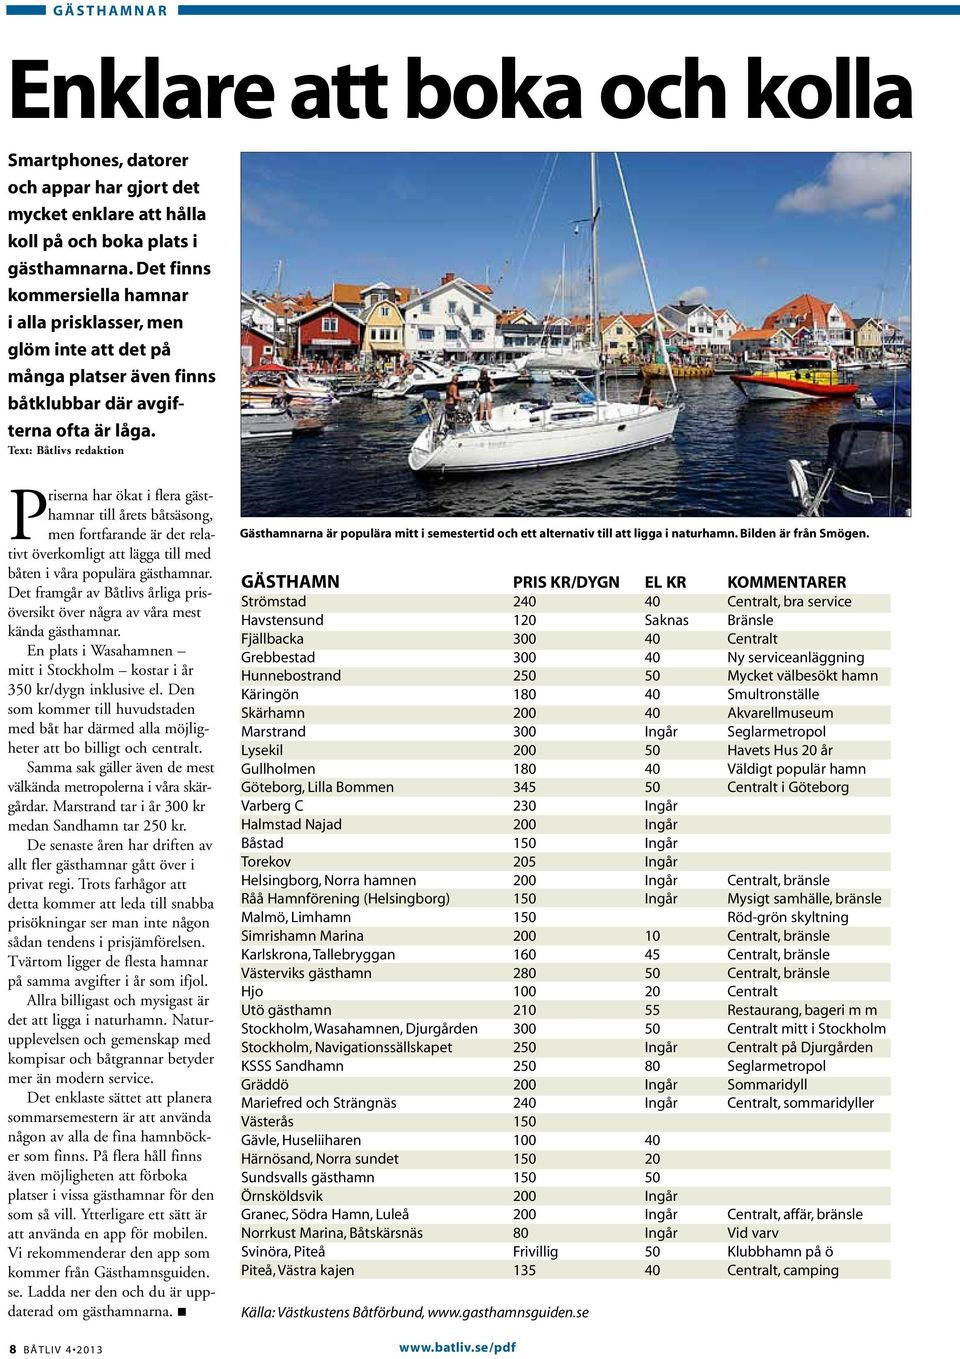 Text: Båtlivs redaktion Priserna har ökat i flera gästhamnar till årets båtsäsong, men fortfarande är det relativt överkomligt att lägga till med båten i våra populära gästhamnar.